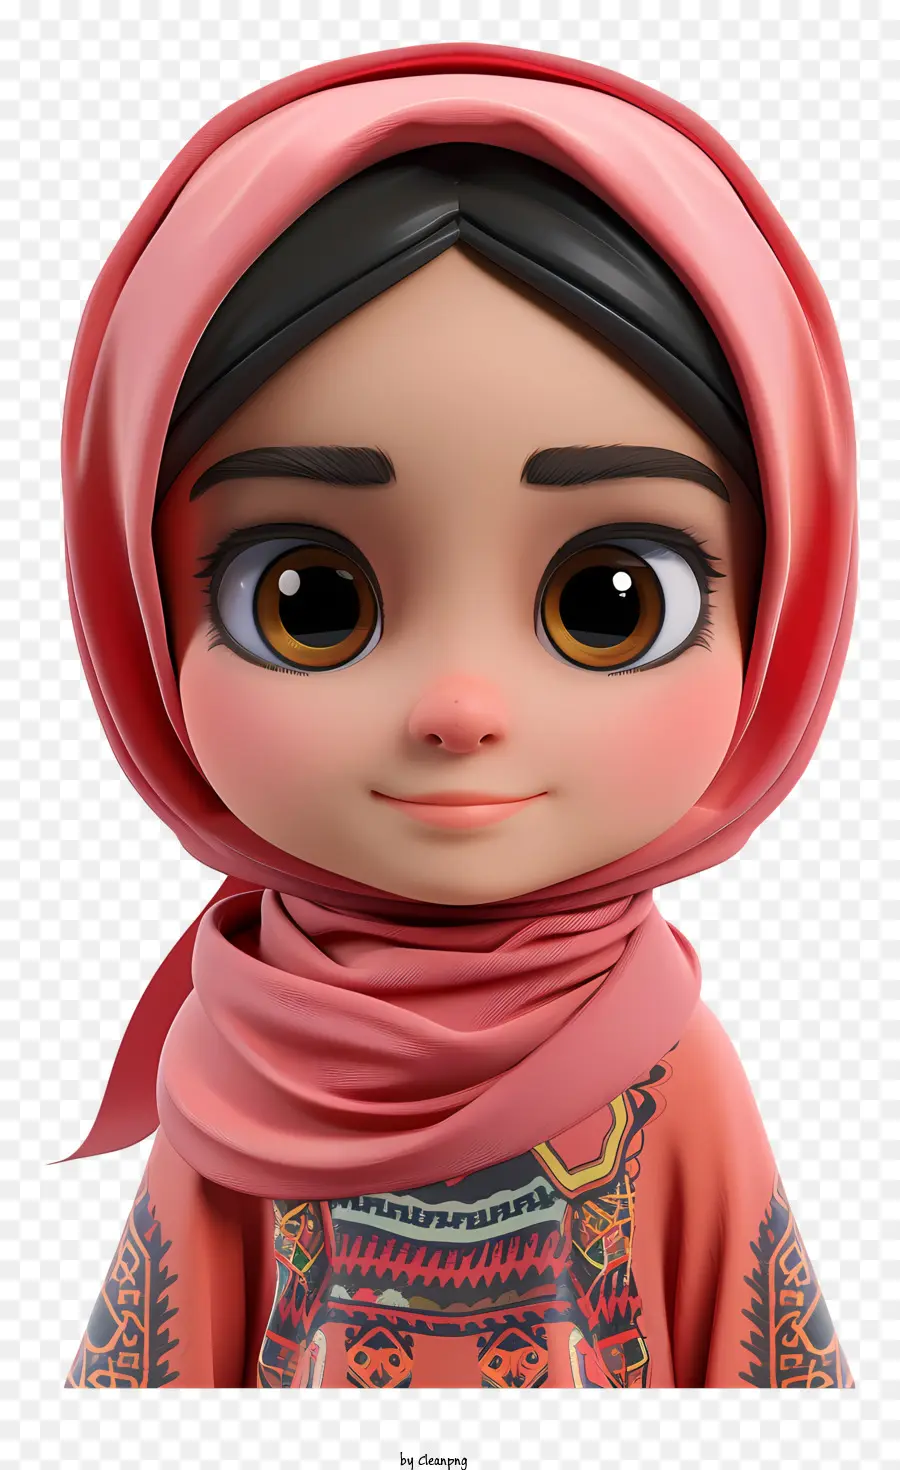 Desenho Animado De Menina Muçulmana，Personagem De Desenho Animado PNG